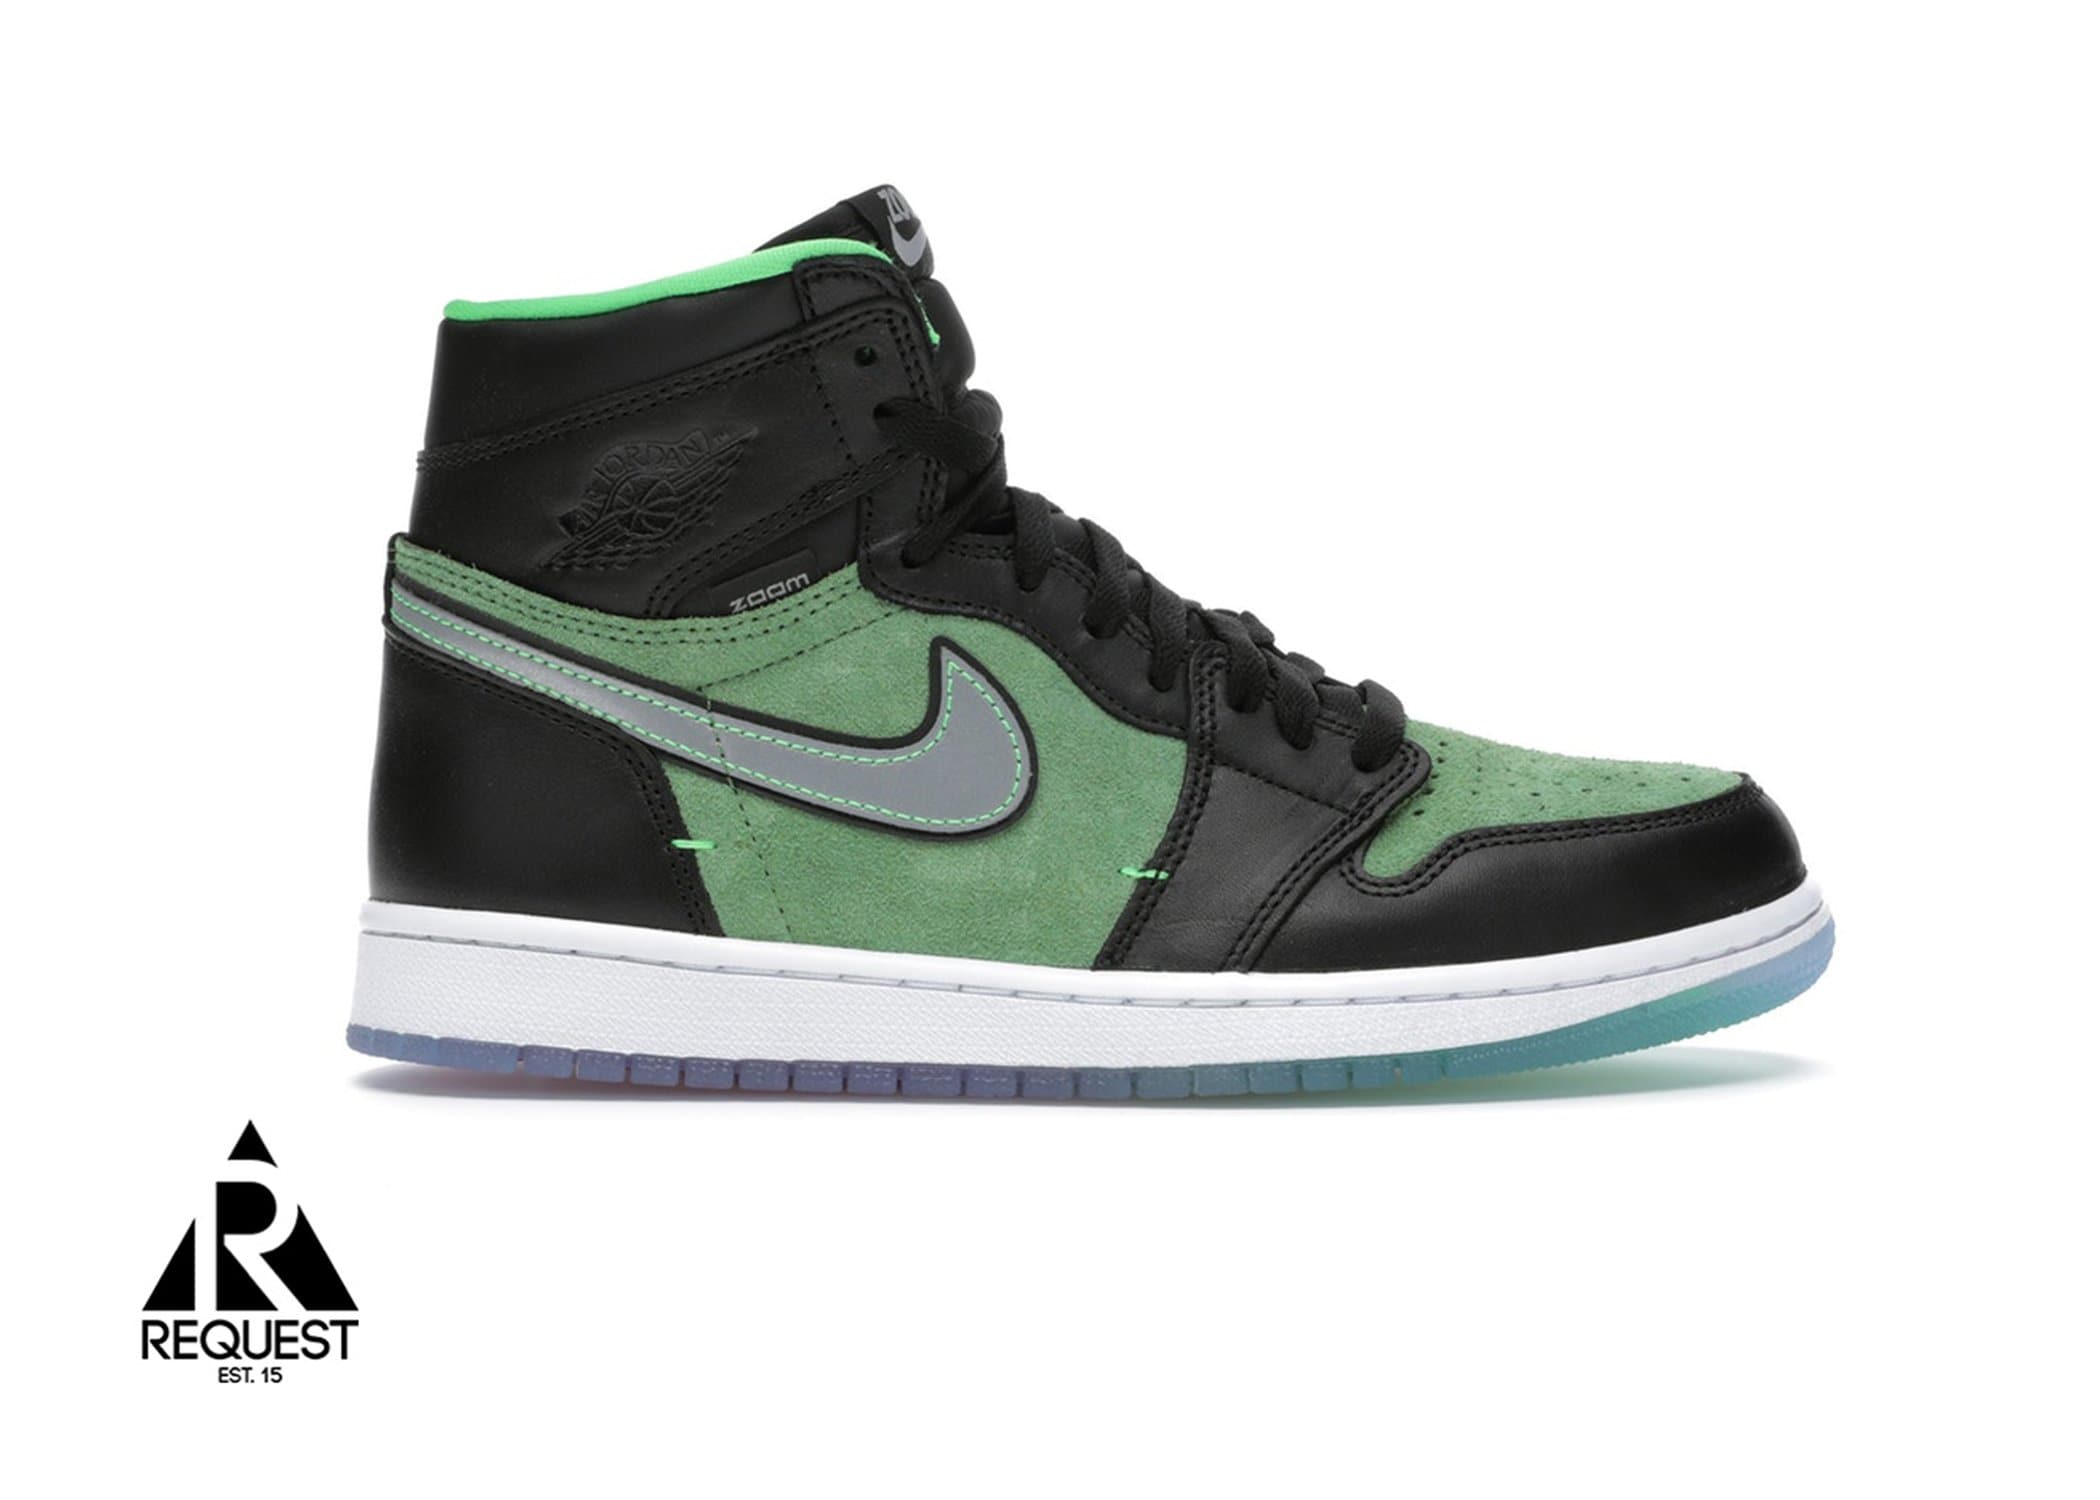 Nike Air Jordan 1 Retro “Zen Green”